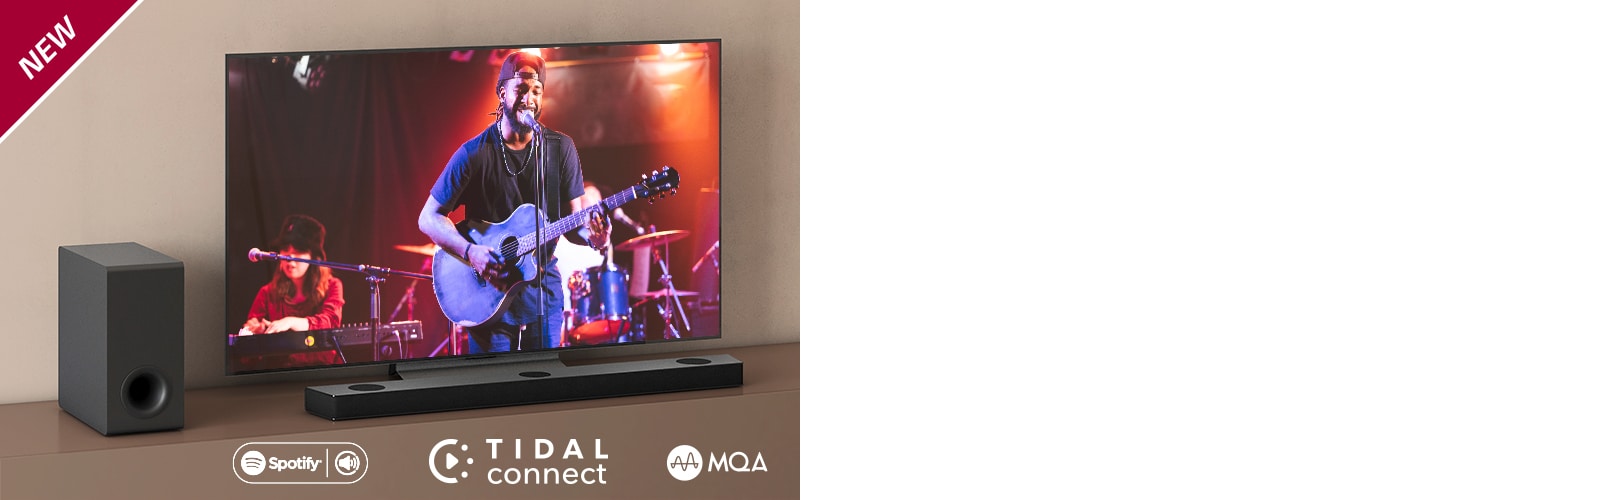 De LG TV staat op een bruine plank, de LG Soundbar S95QR wordt voor de tv geplaatst. De subwoofer wordt links van de tv geplaatst. Tv toont een concertscène. In de linkerbovenhoek staat NEW mark.